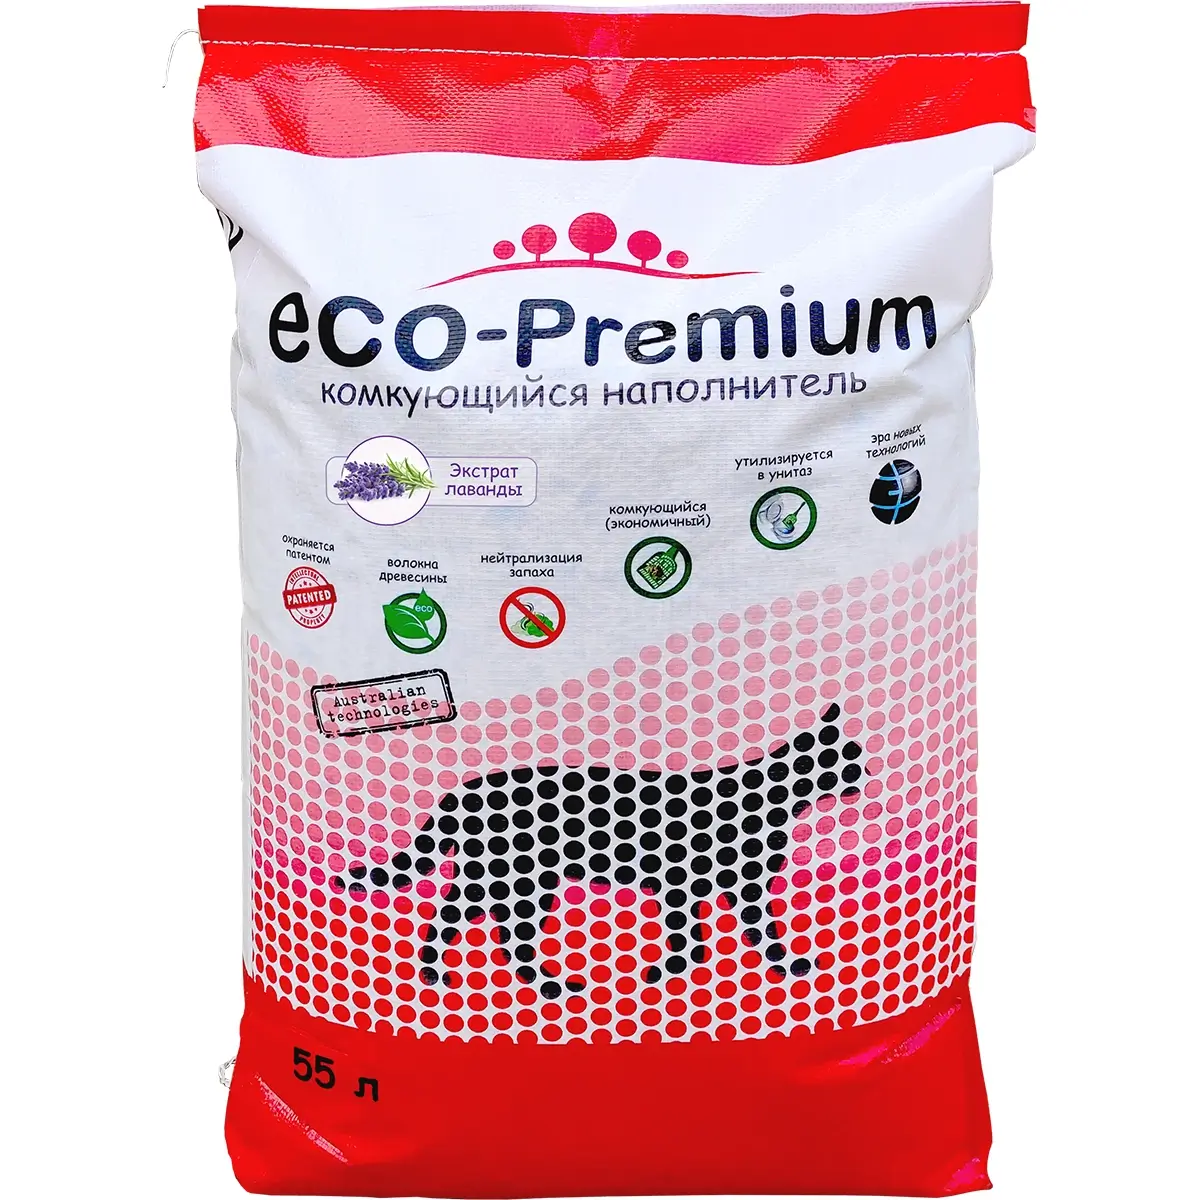 Наполнитель ECO-Premium для кошачьего туалета (Древесный комкующийся с ароматом лаванды, 55л)